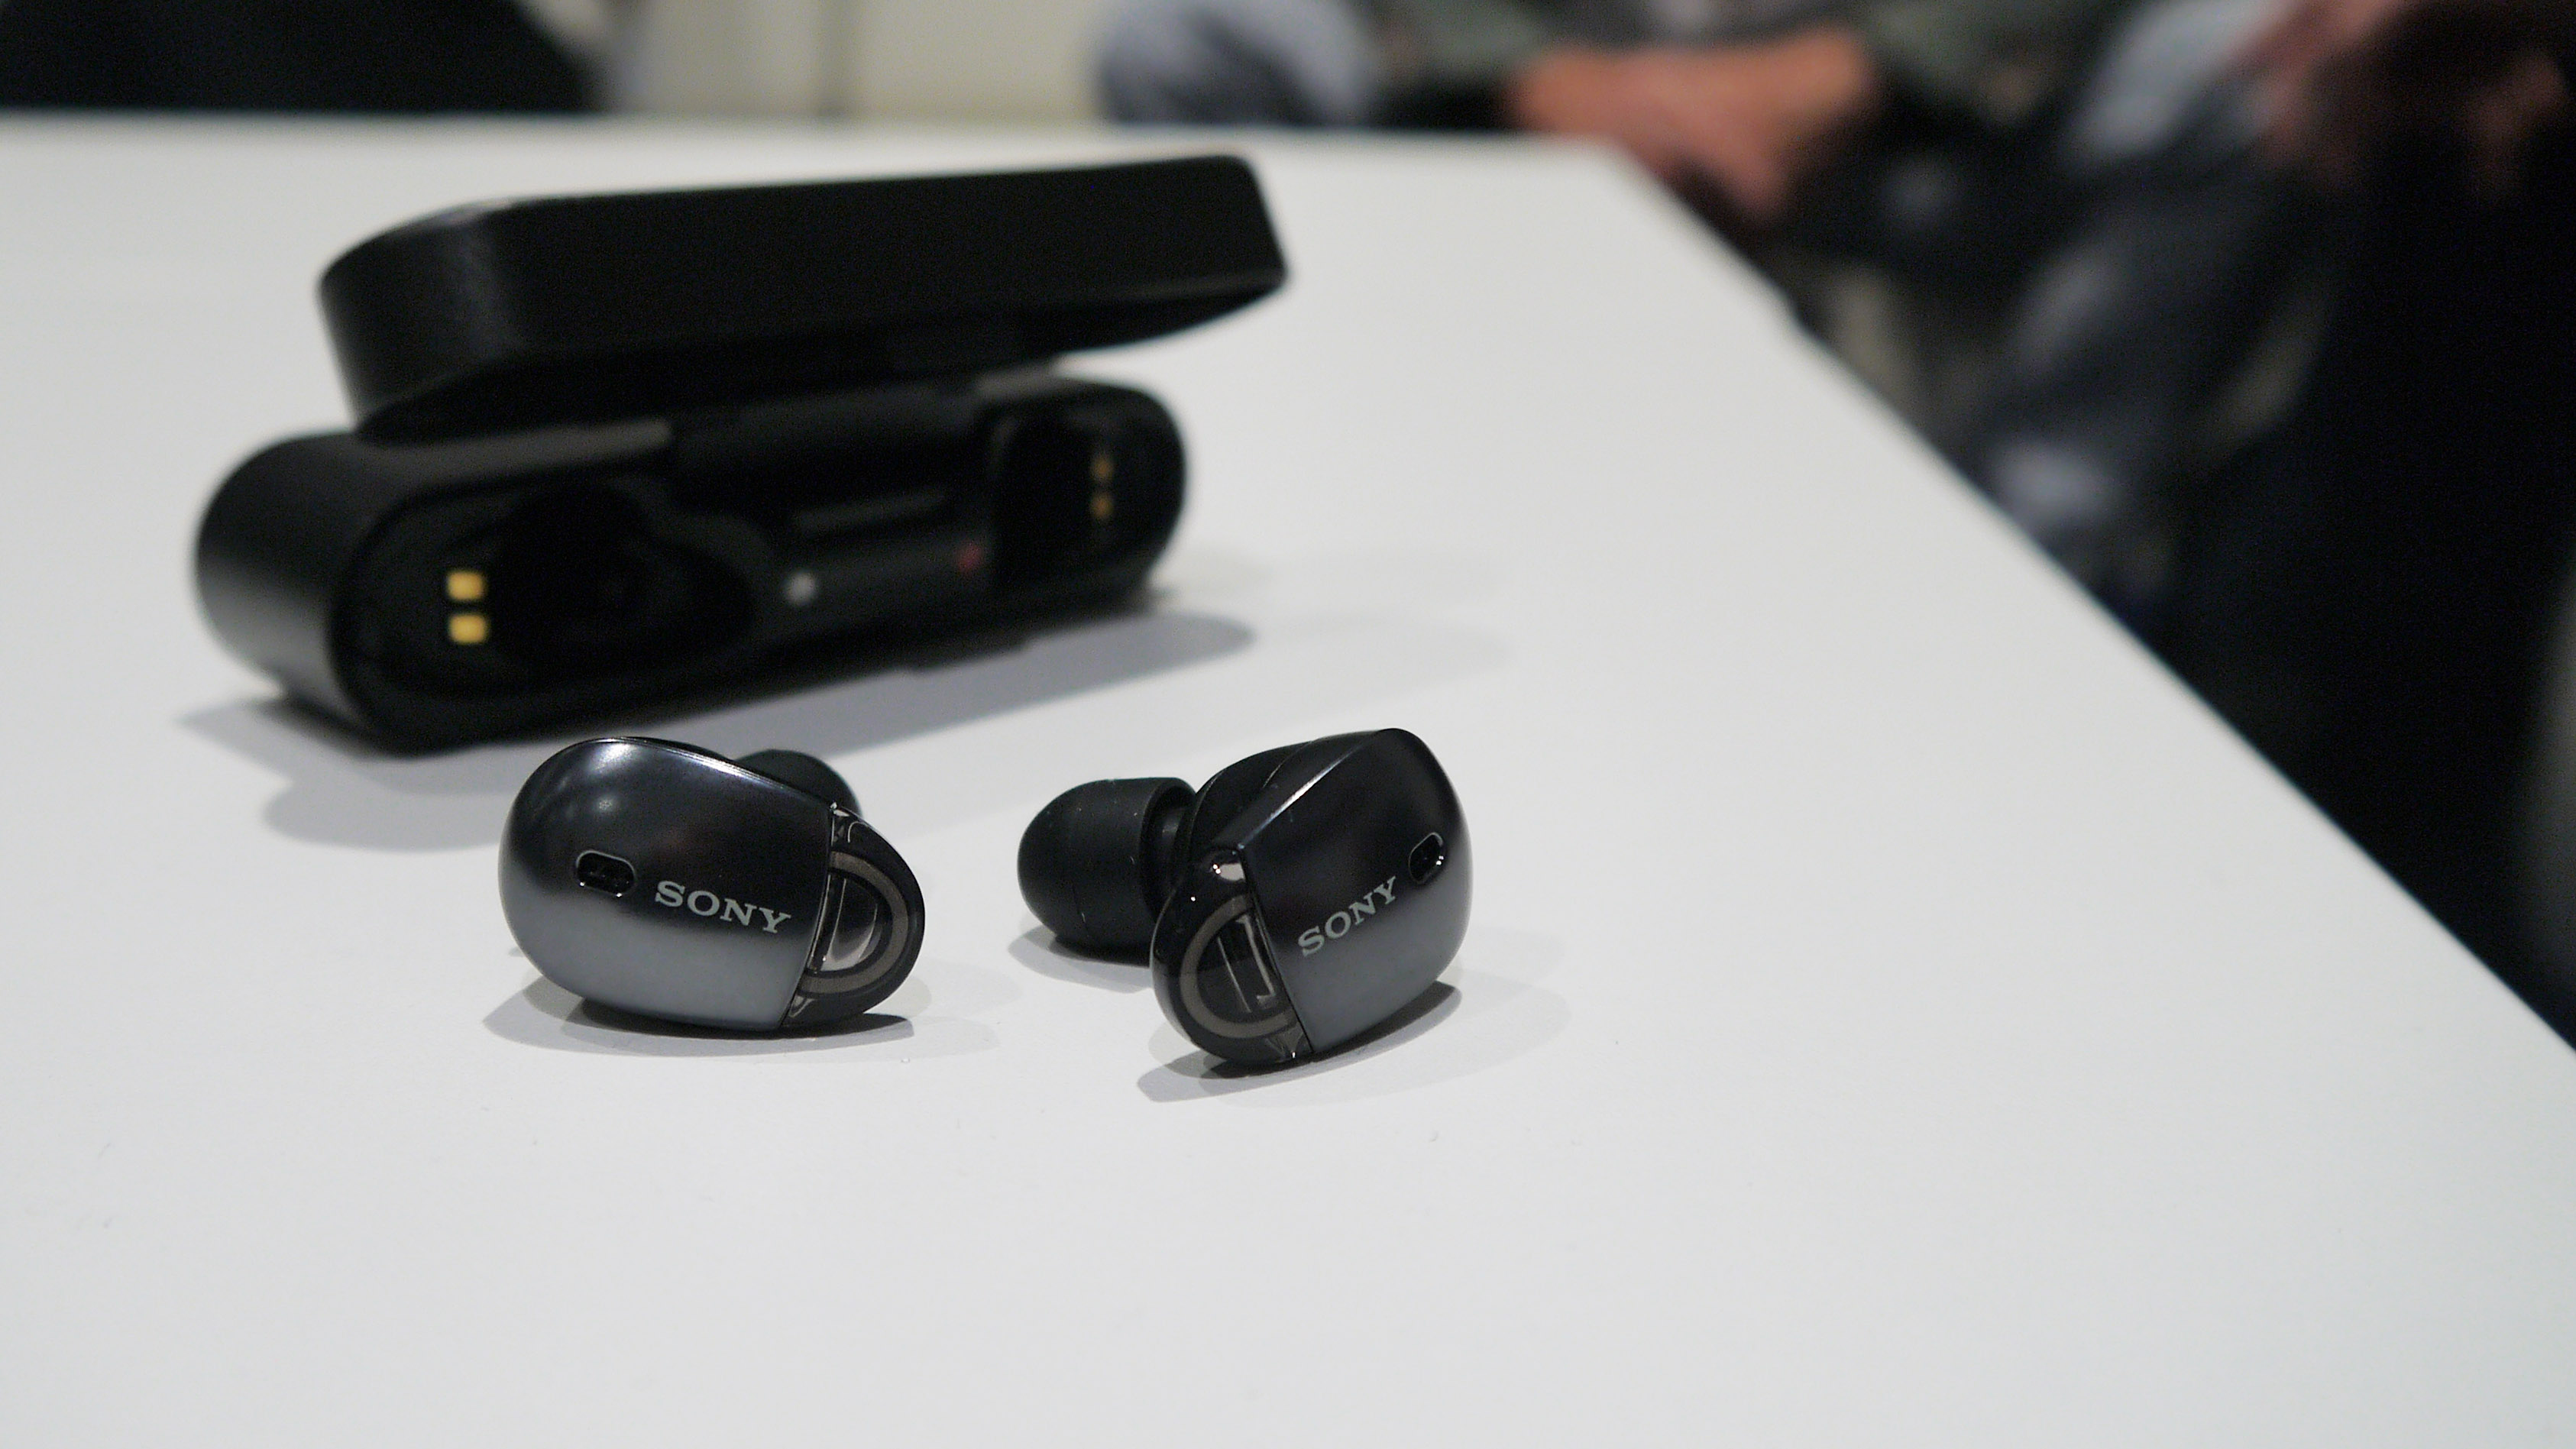 Sony WF-1000X earbuds